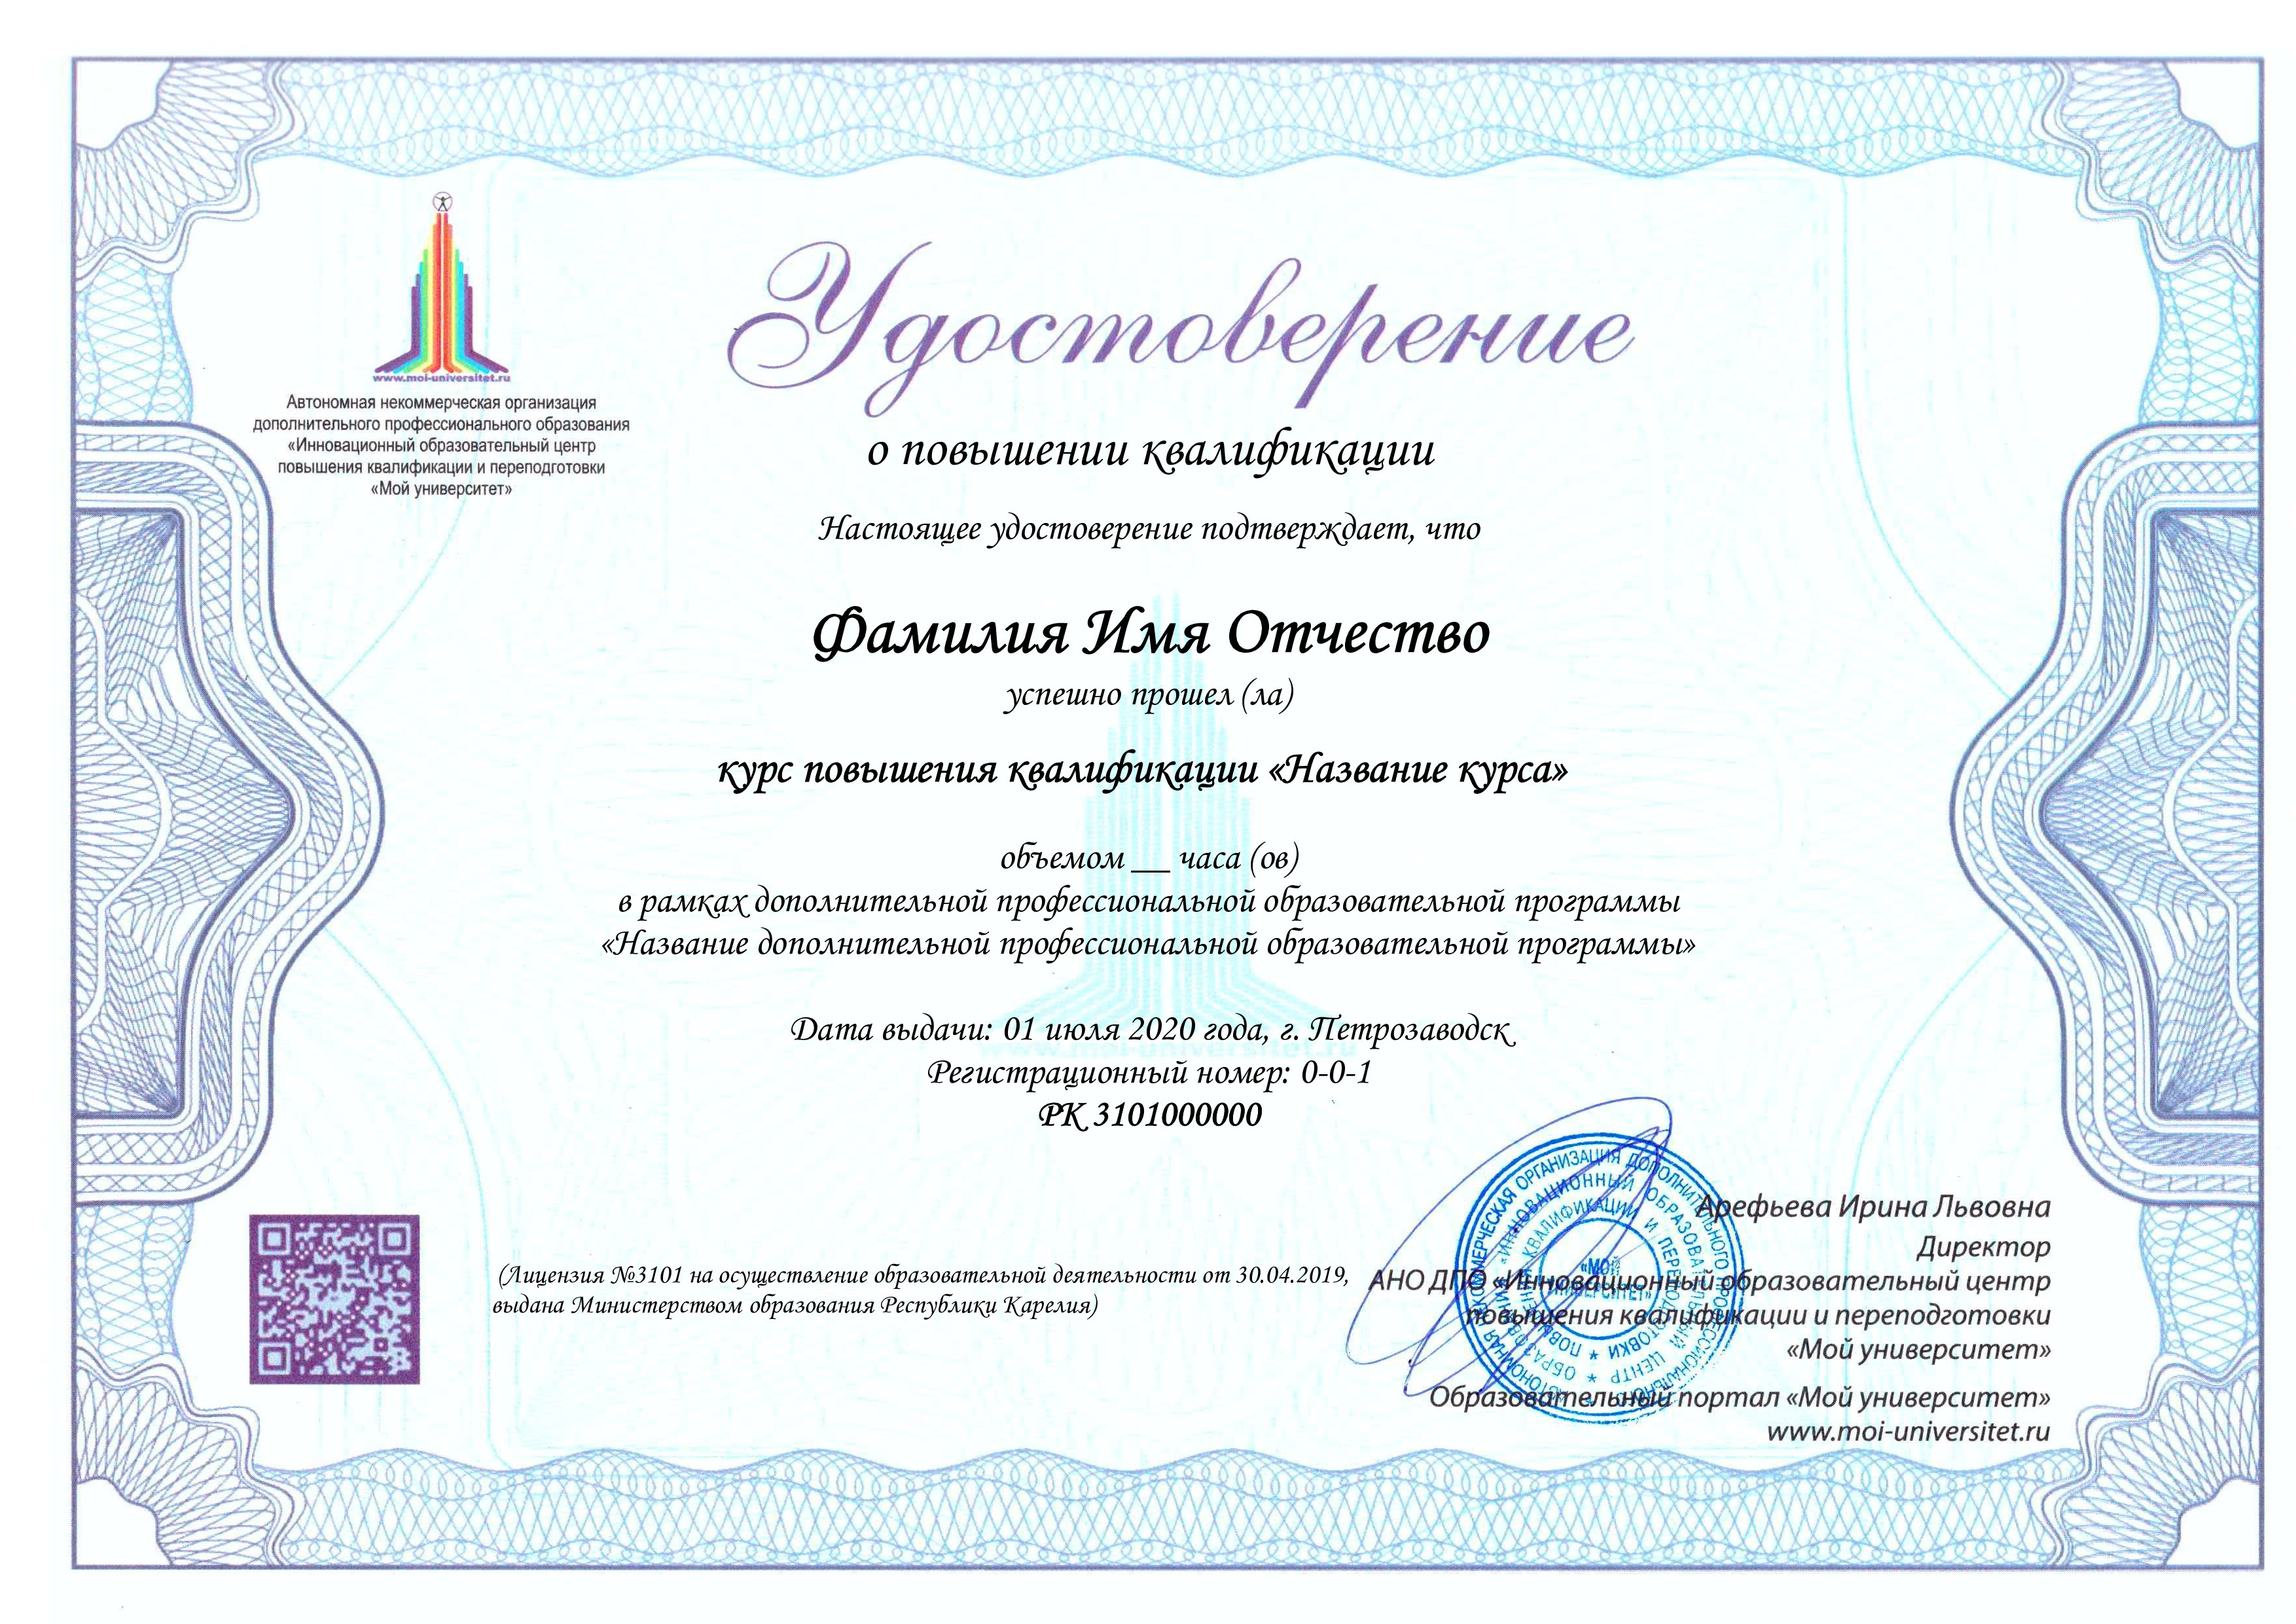 Сертификат об успешном прохождении курса обучения